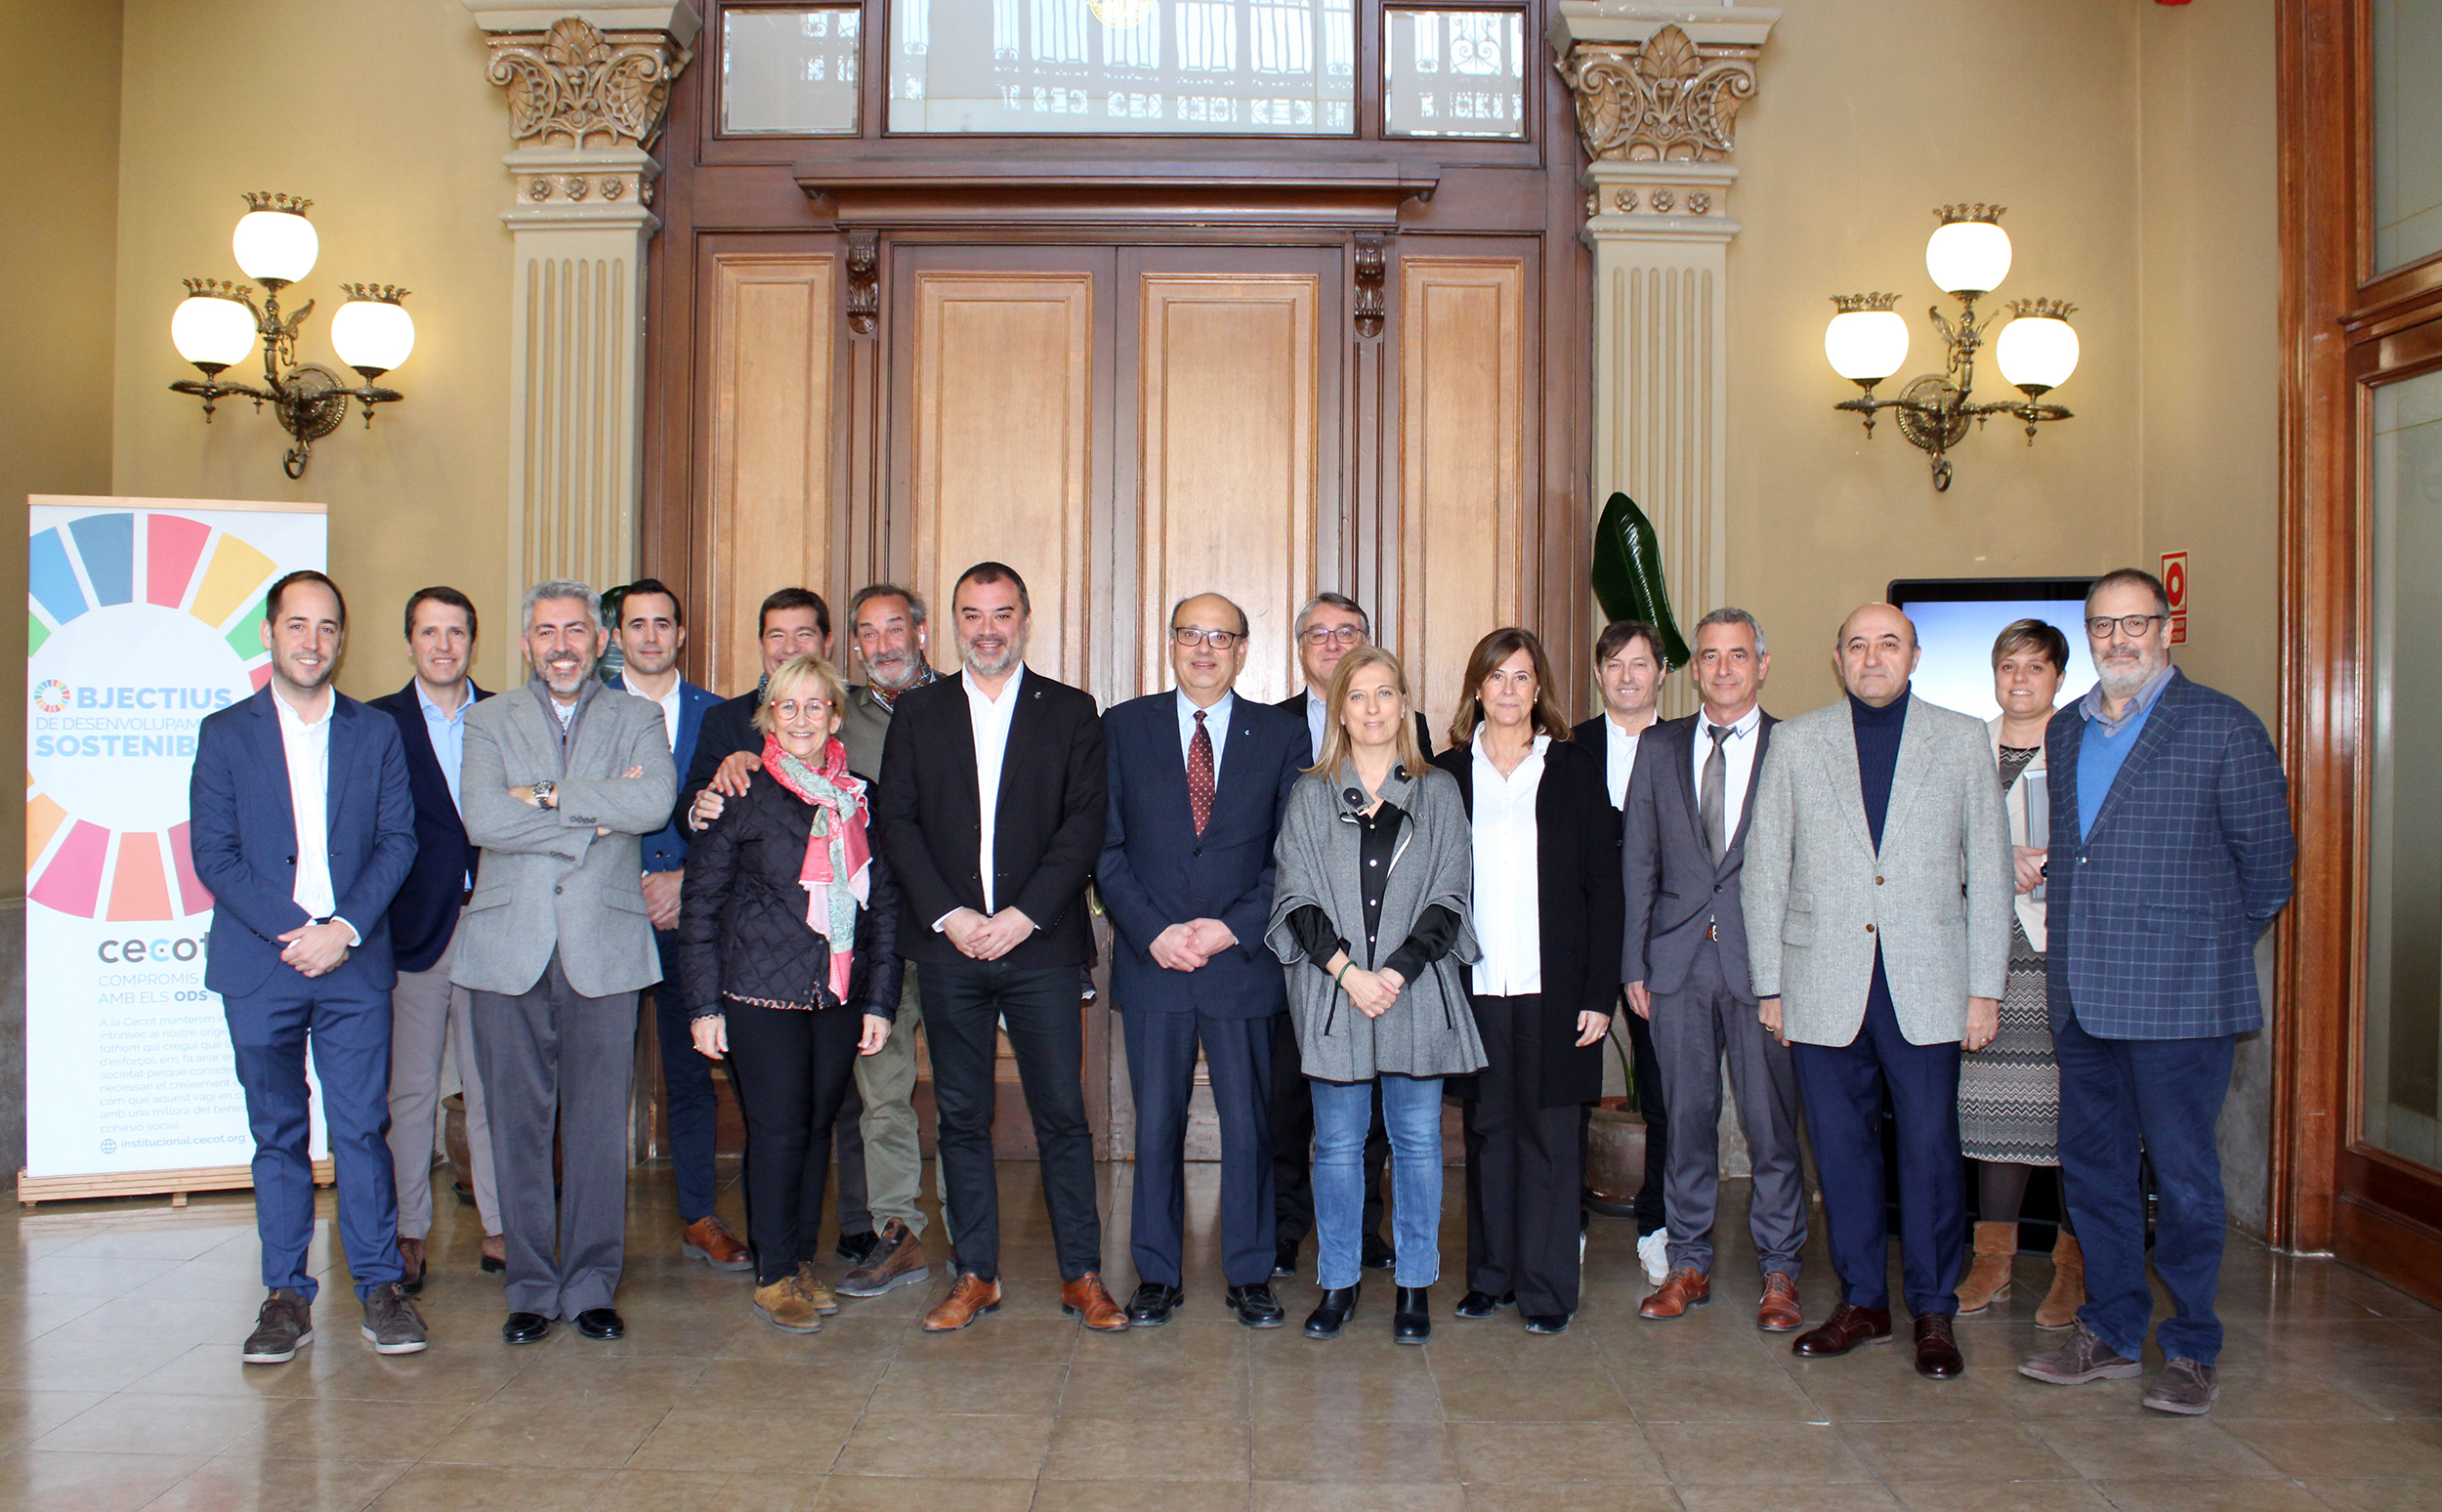 Sessió de treball entre la Cecot i l’equip de govern de l’Ajuntament de Terrassa pel desenvolupament econòmic i empresarial de la ciutat